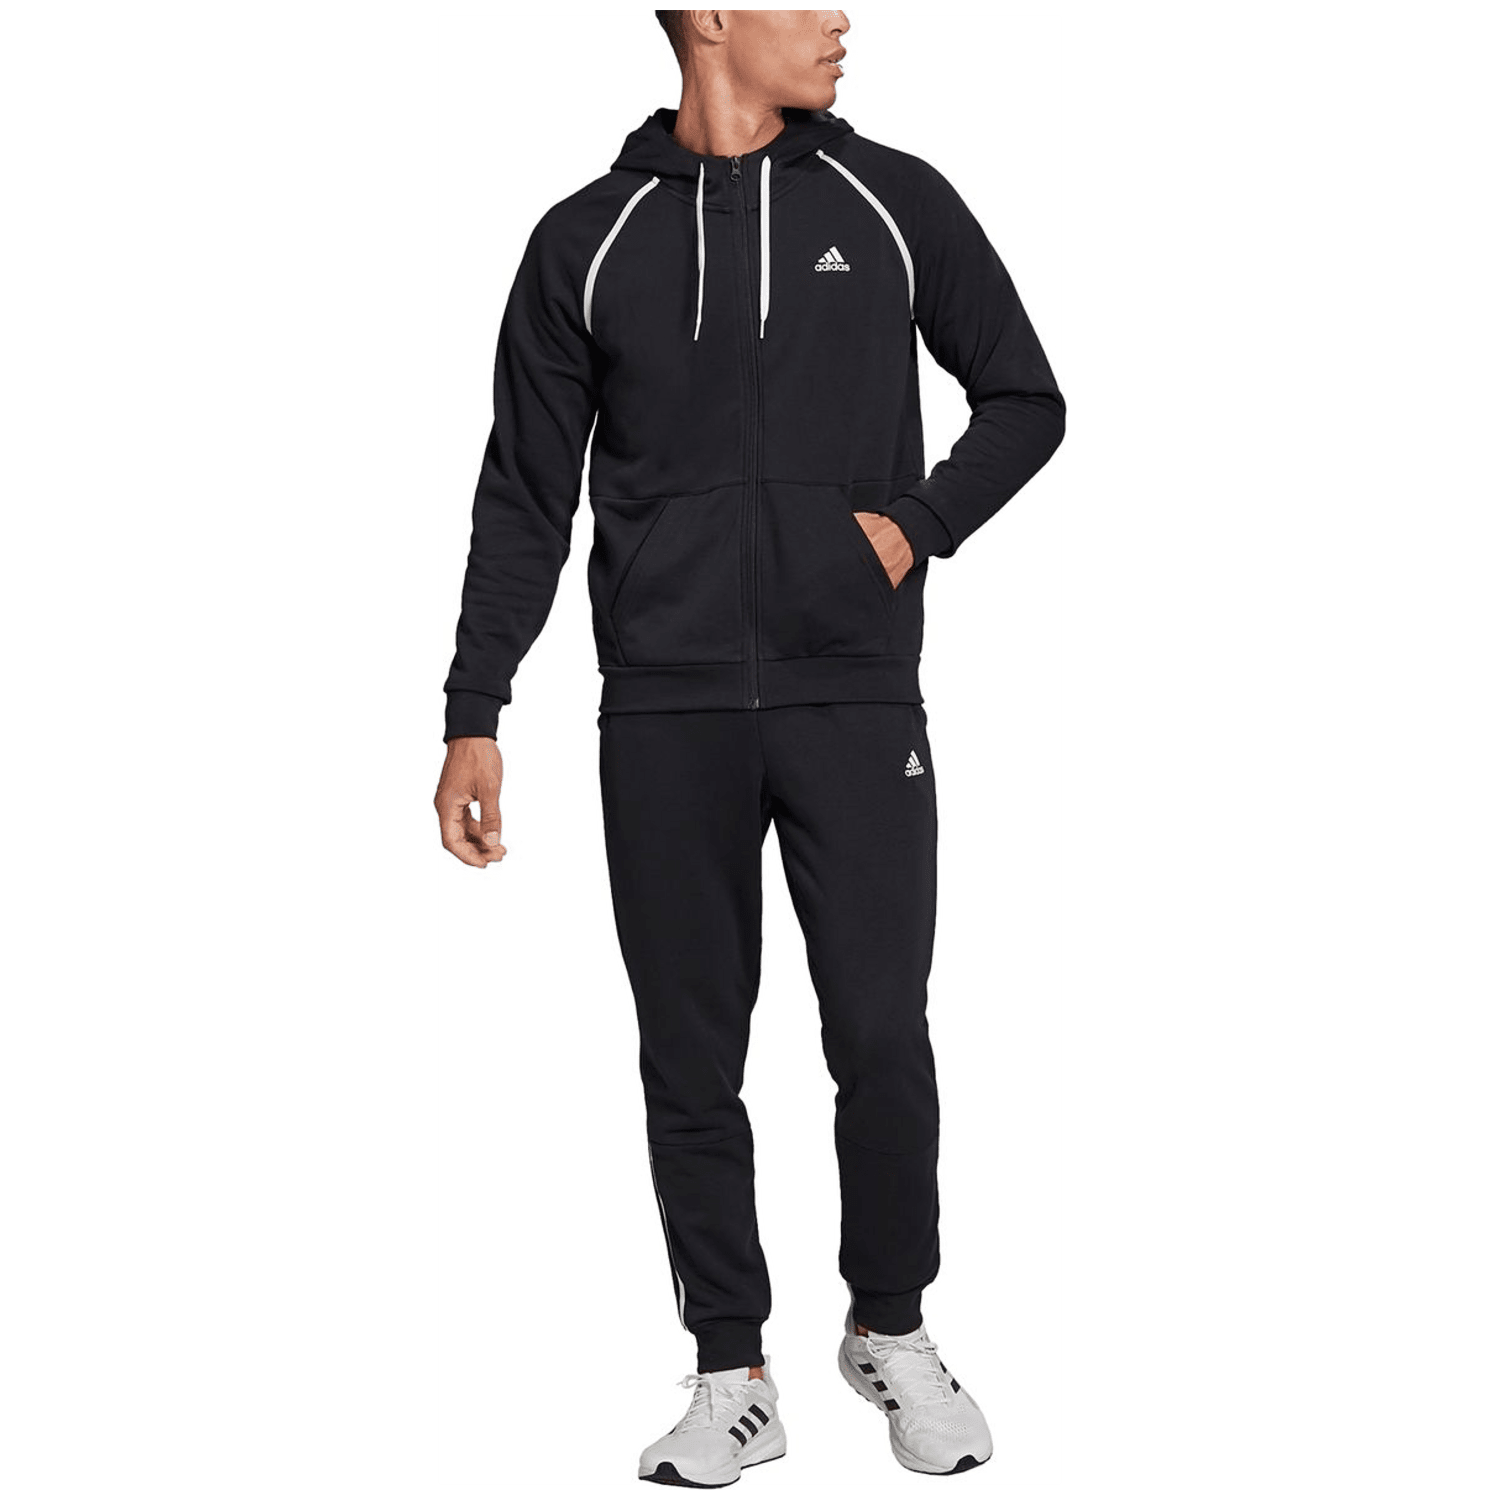 Adidas Cotton Piping Trainingsanzug Herren Trainingsanzug